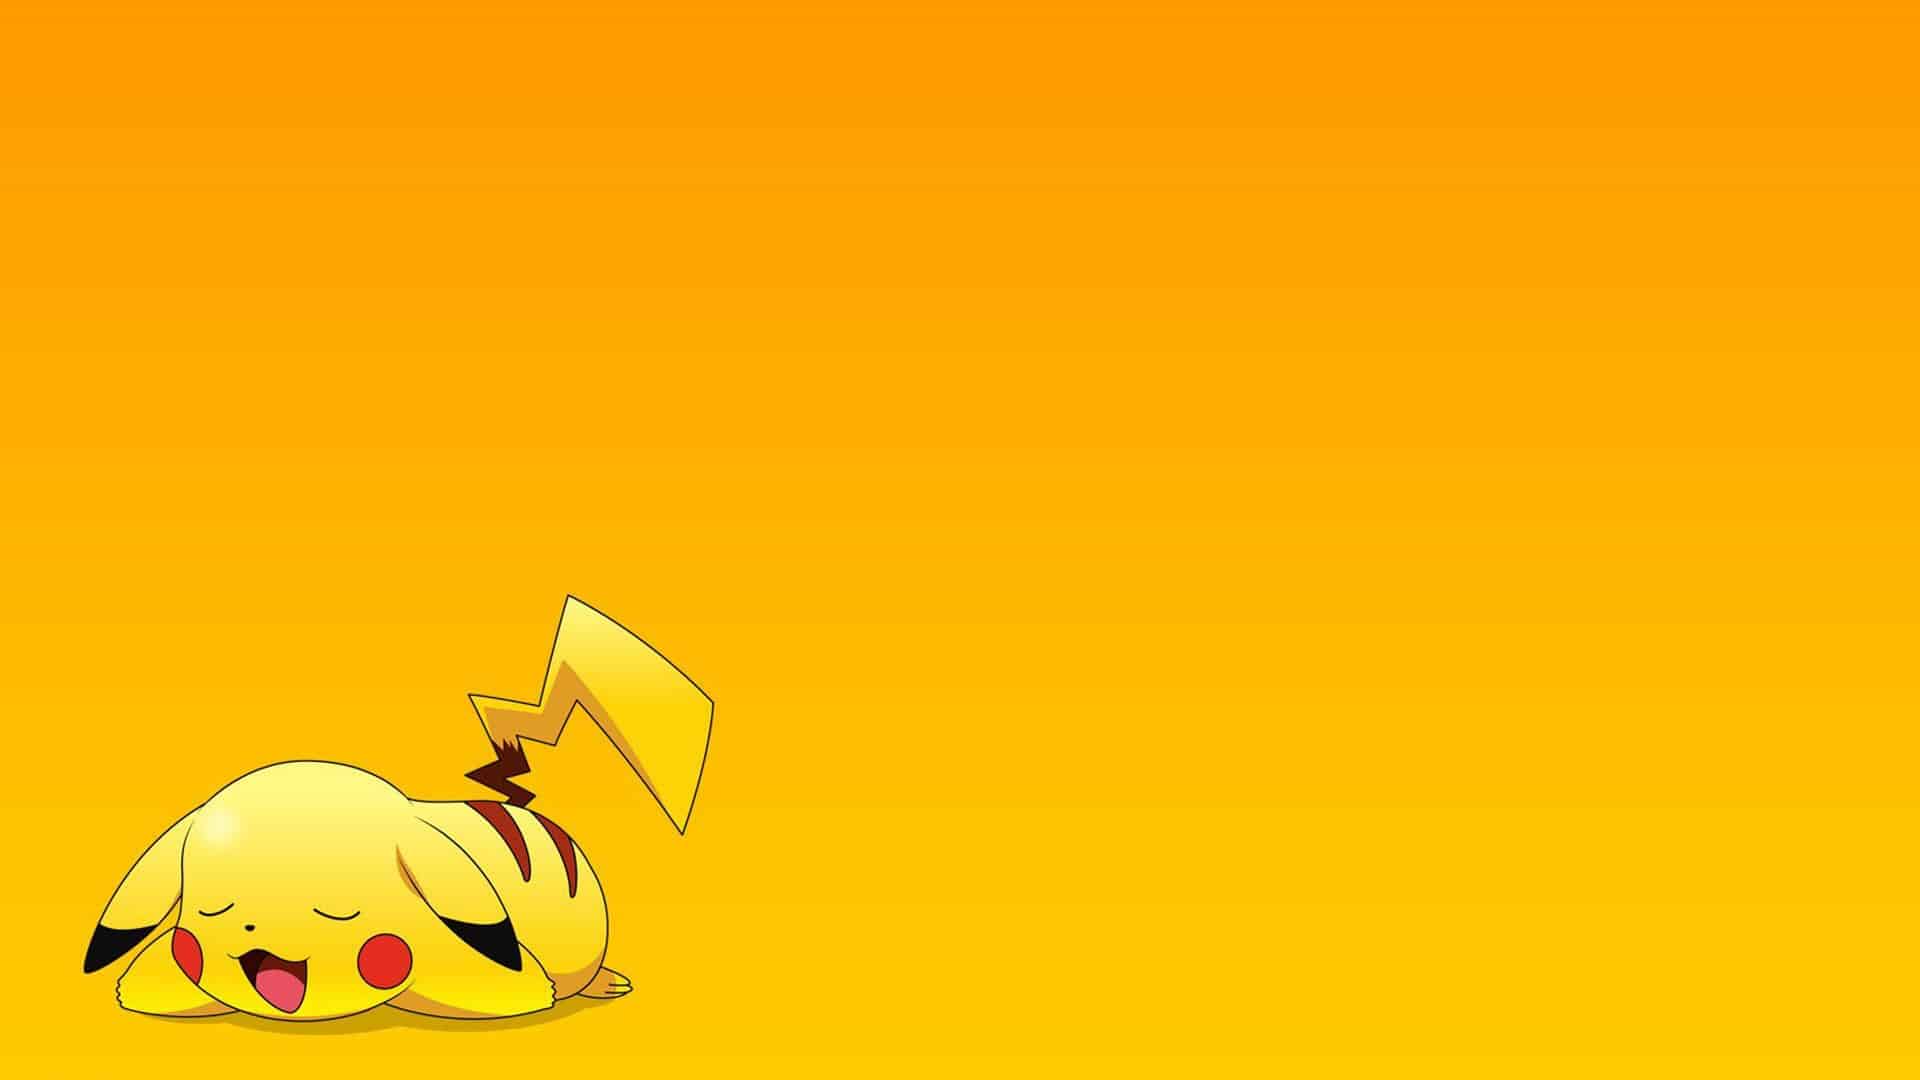 Hình nền Pikachu cực kỳ dễ thương